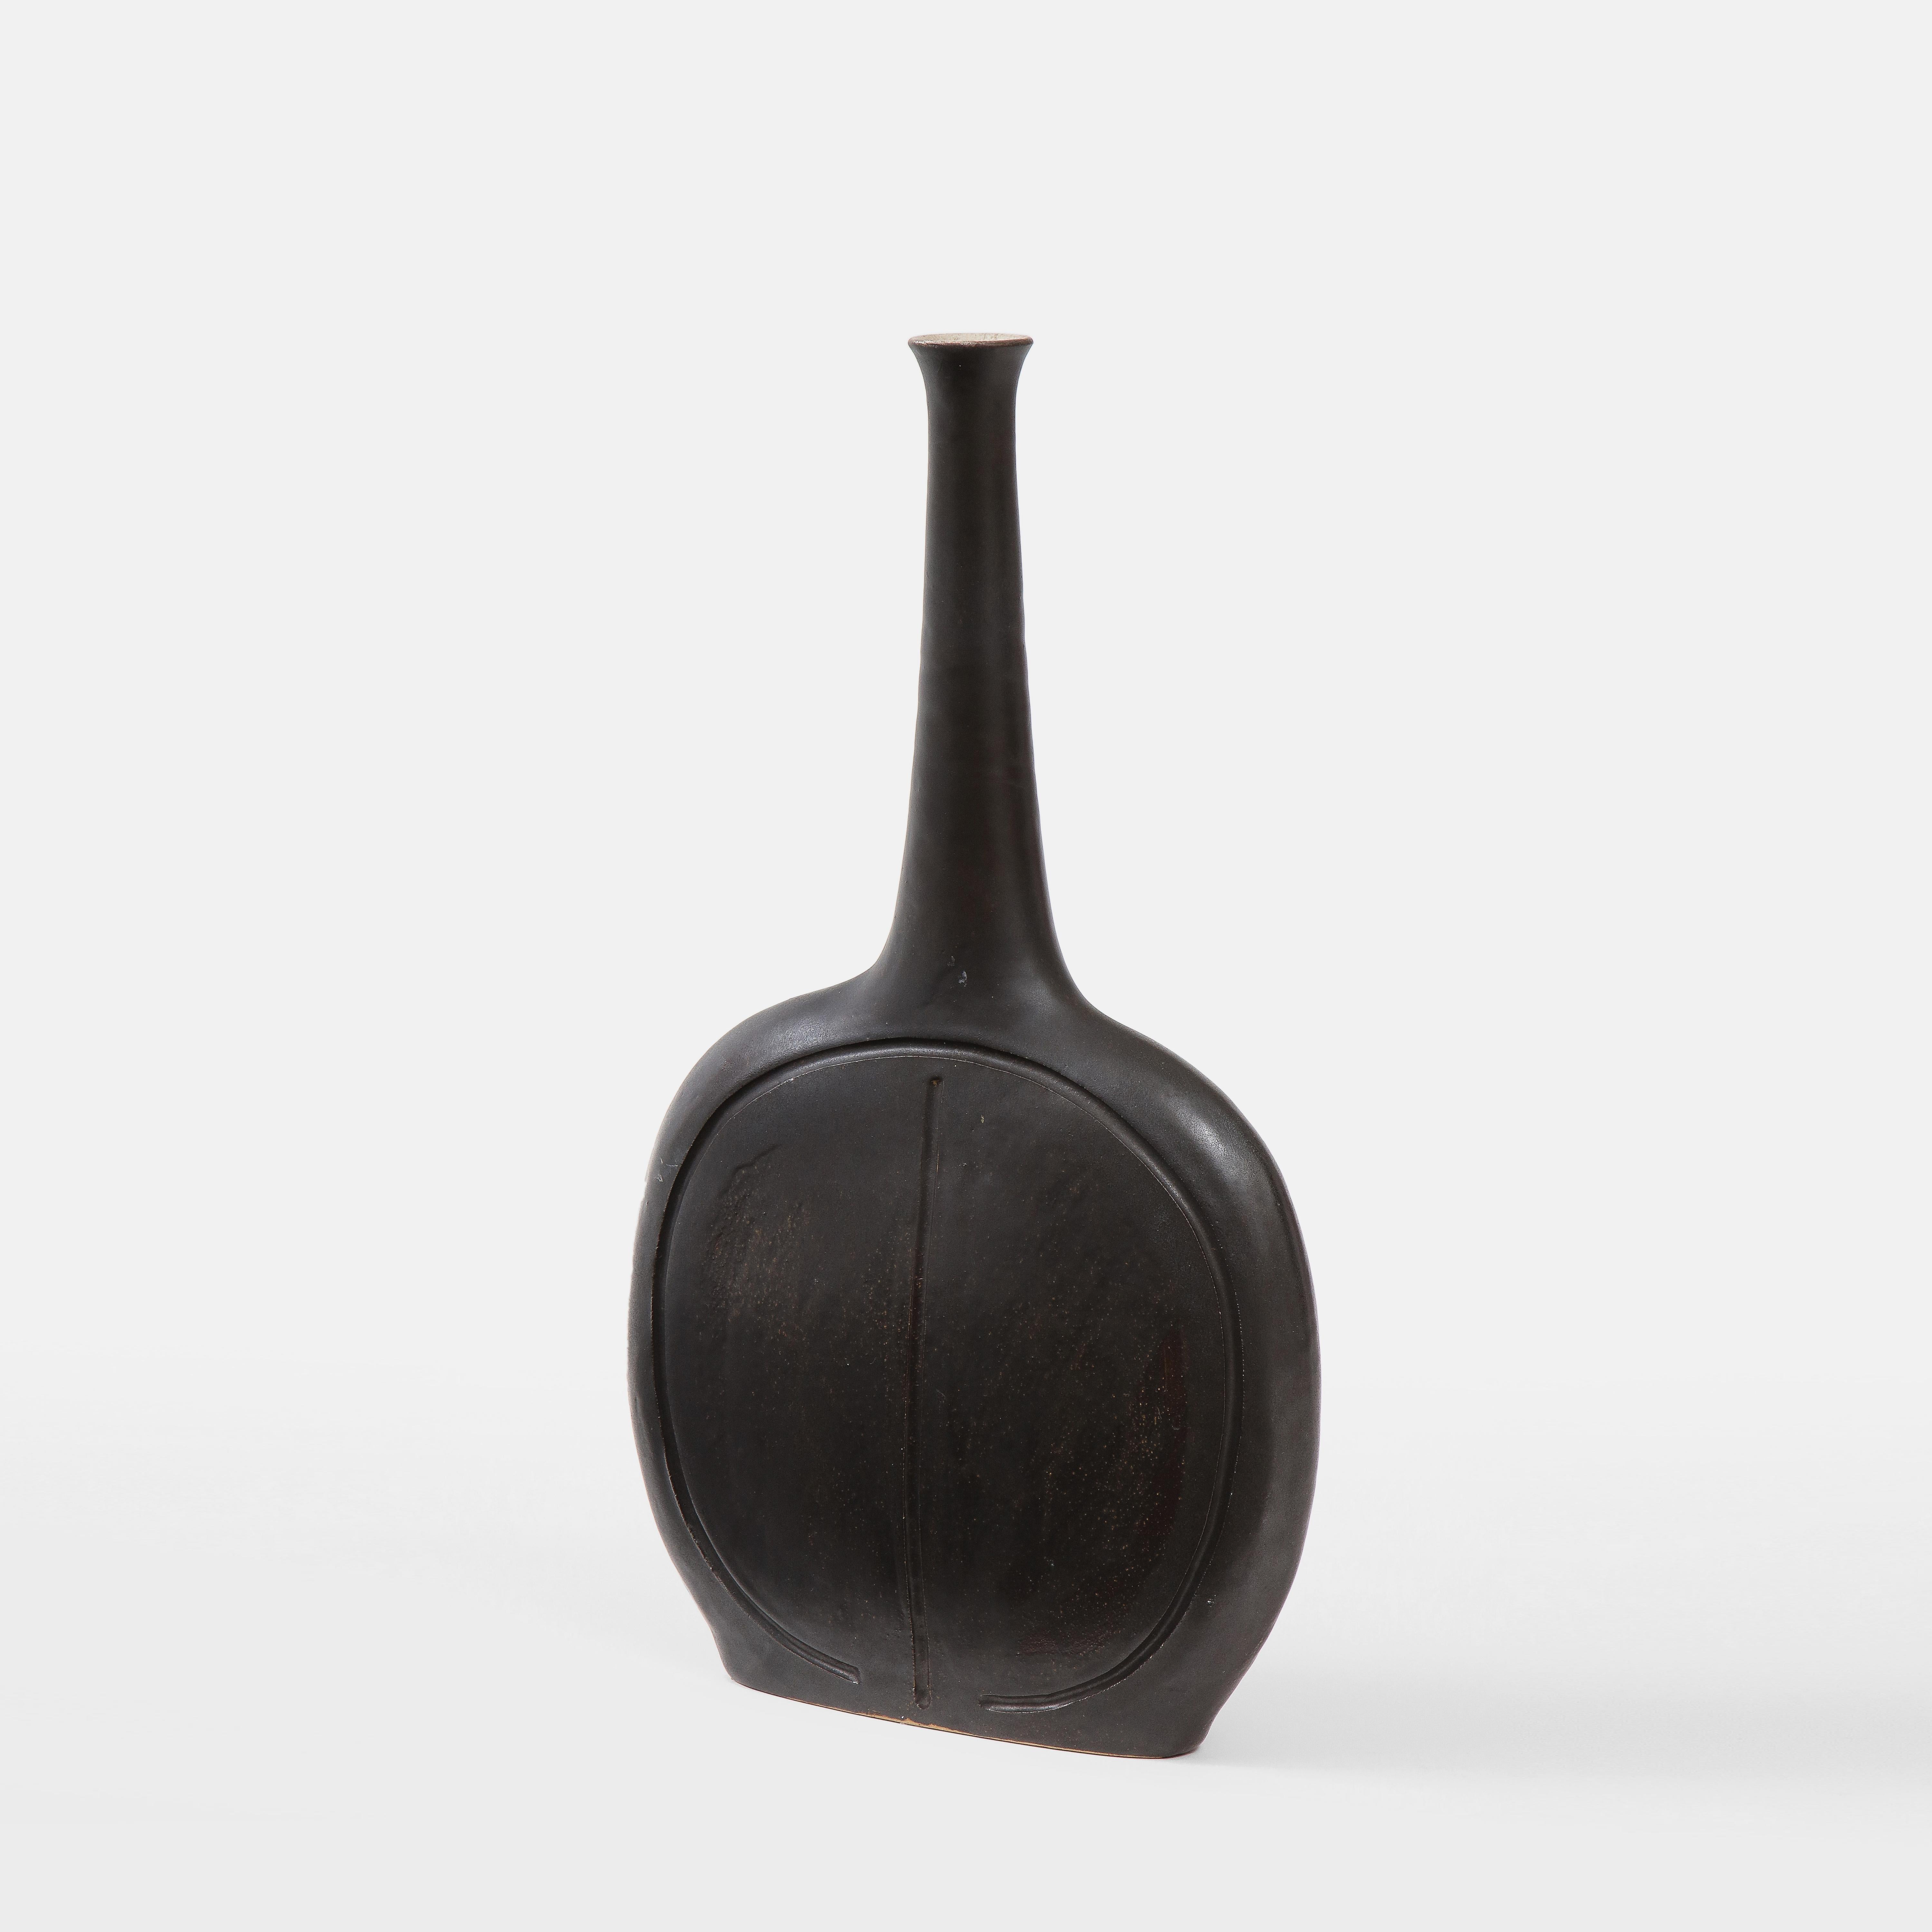 Boîte ou vase en céramique émaillée noire claire Bruno Gambone avec corps circulaire aplati et col effilé et allongé, Italie, années 1970. Le corps est incisé d'une décoration gravée abstraite. Signé en bas « GAMBONE ITALIE ».